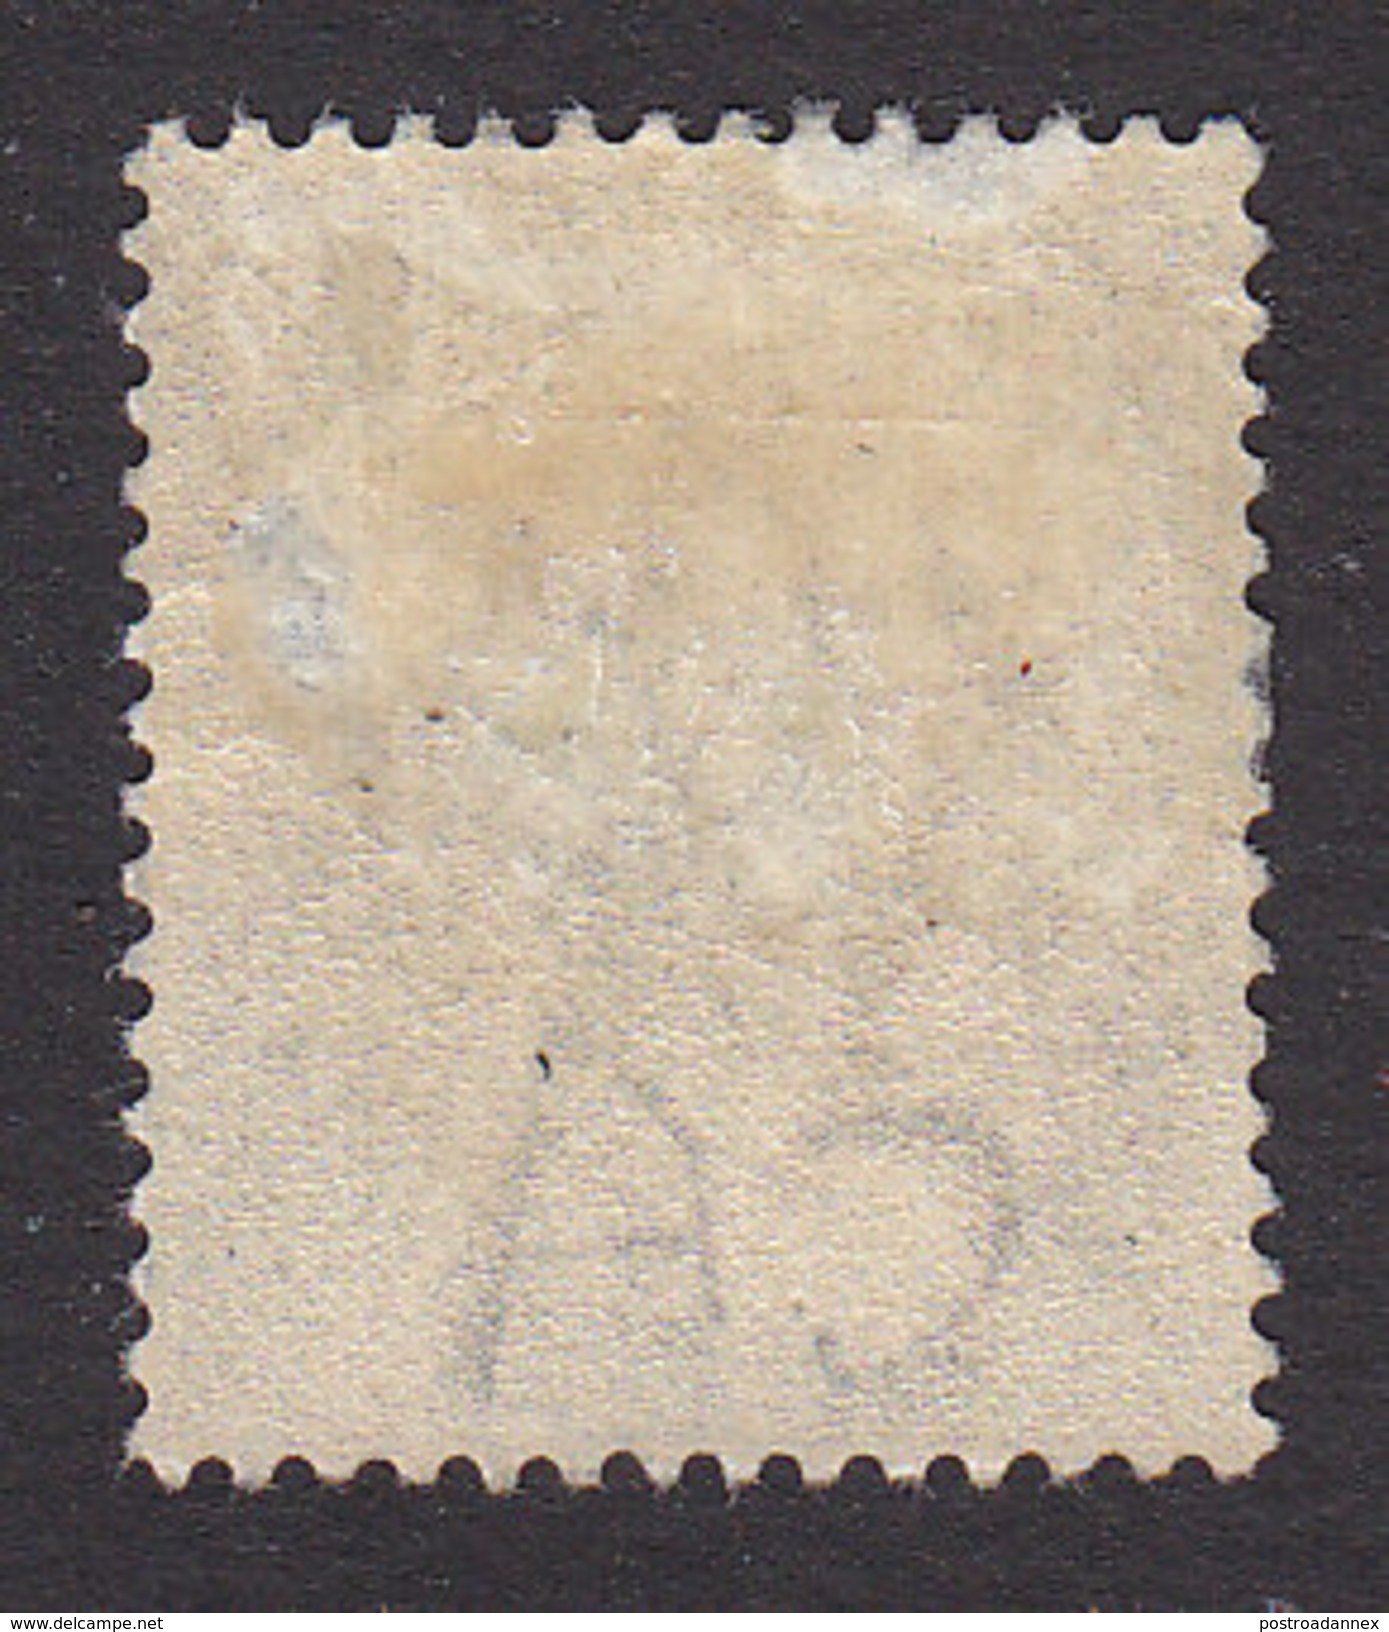 Jamaica, Scott #17, Mint Hinged, Queen Victoria, Issued 1883 - Jamaica (...-1961)